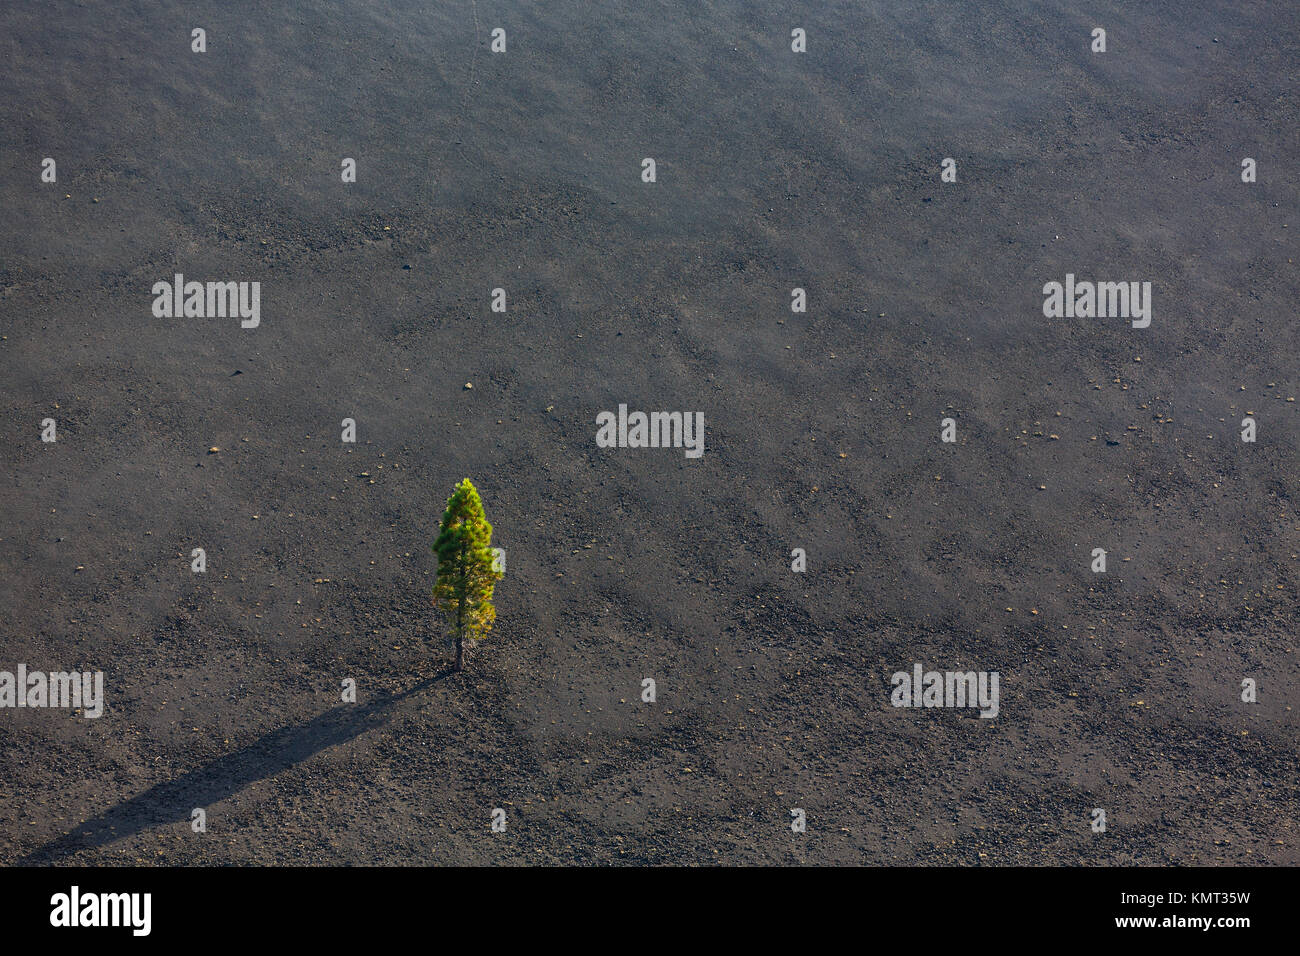 Albero cresce in ceneri vulcaniche Foto Stock